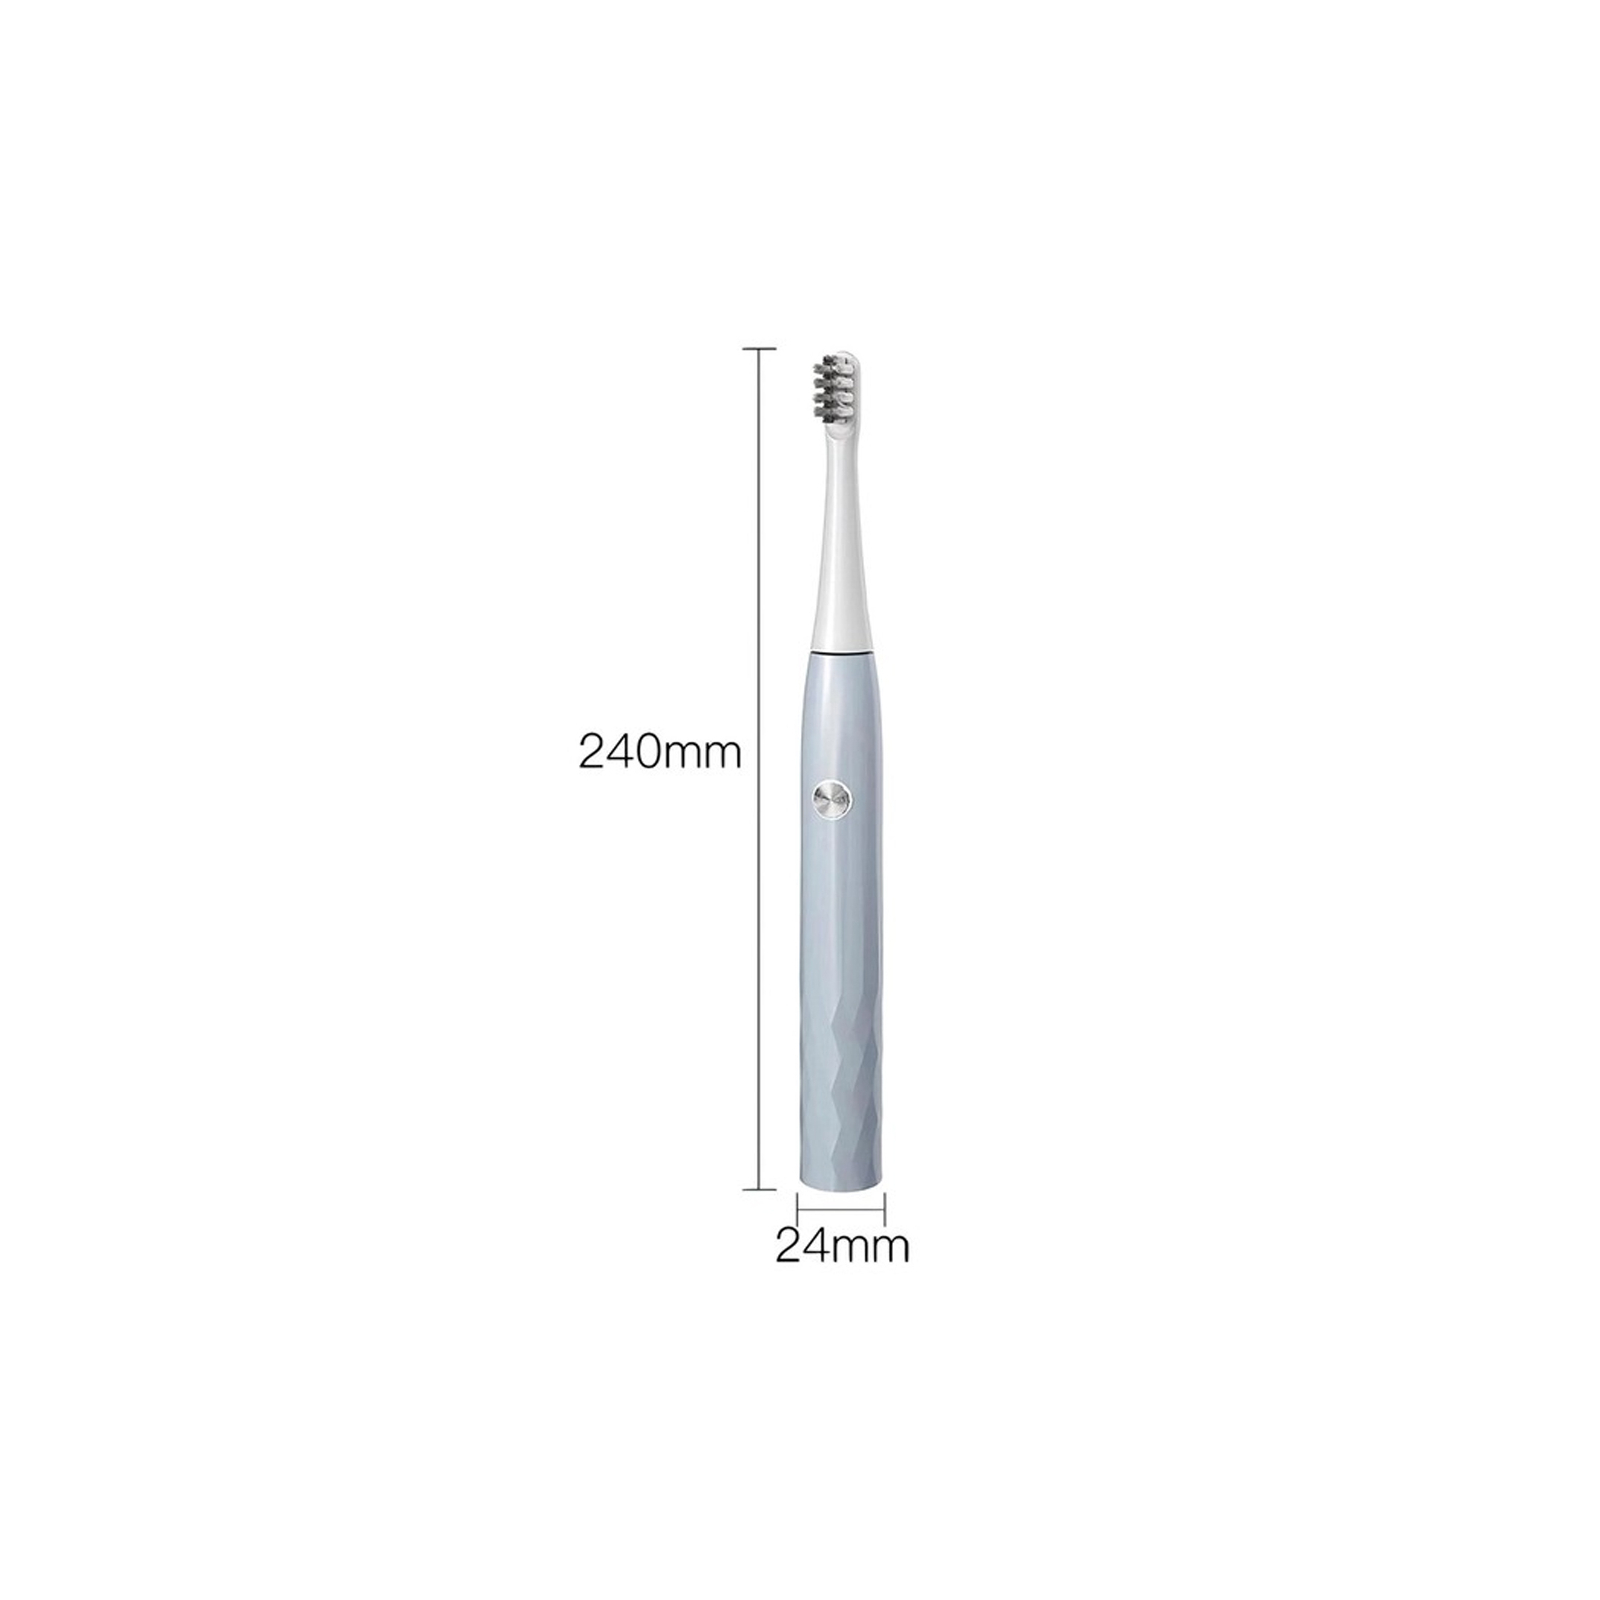 Электрическая зубная щетка Xiaomi T501 Grey изображение 3